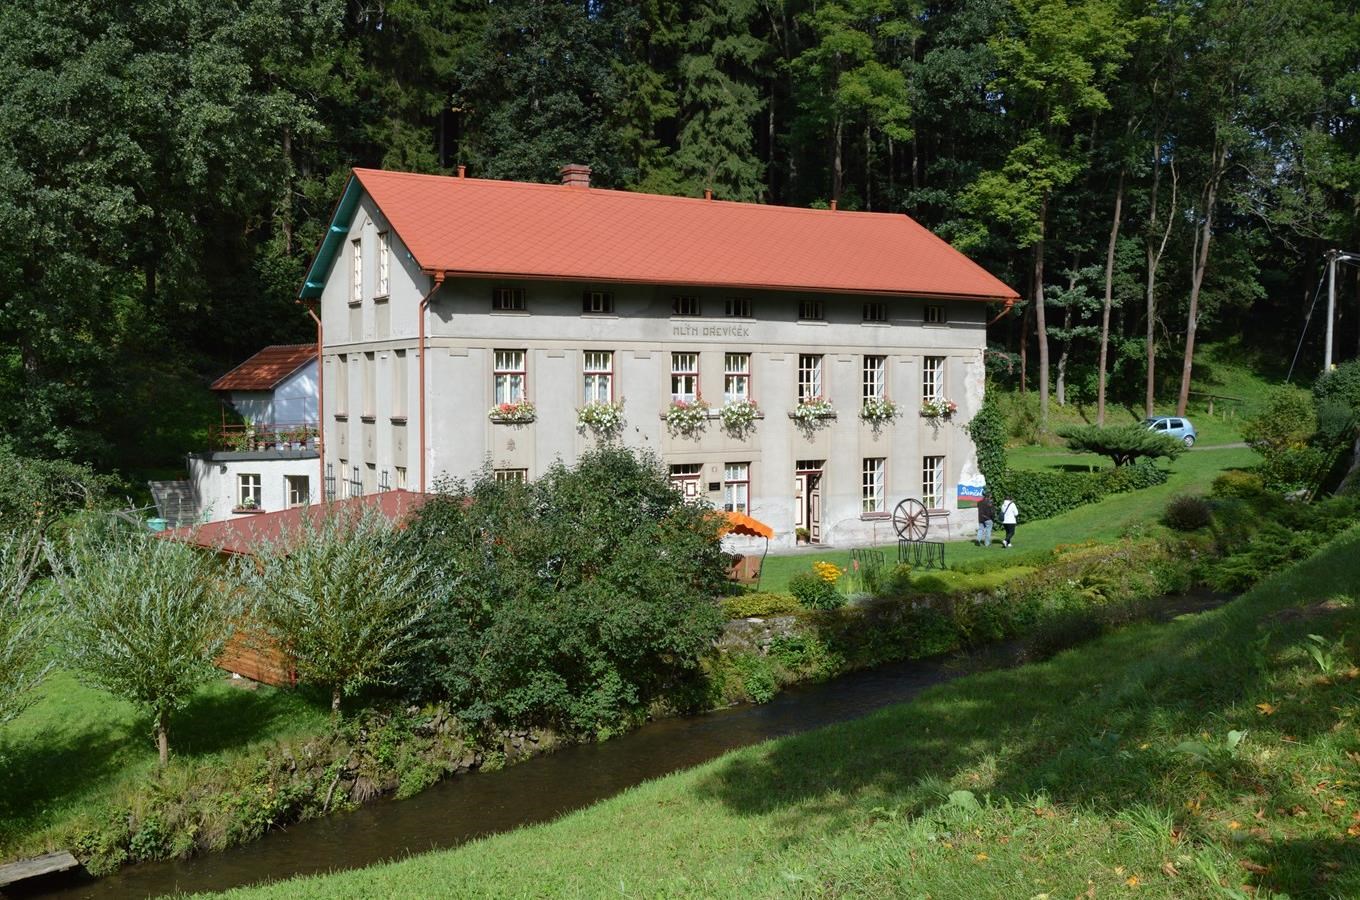 Mlýn Dřevíček - Mlynářské muzeum v Horním Dřevíči